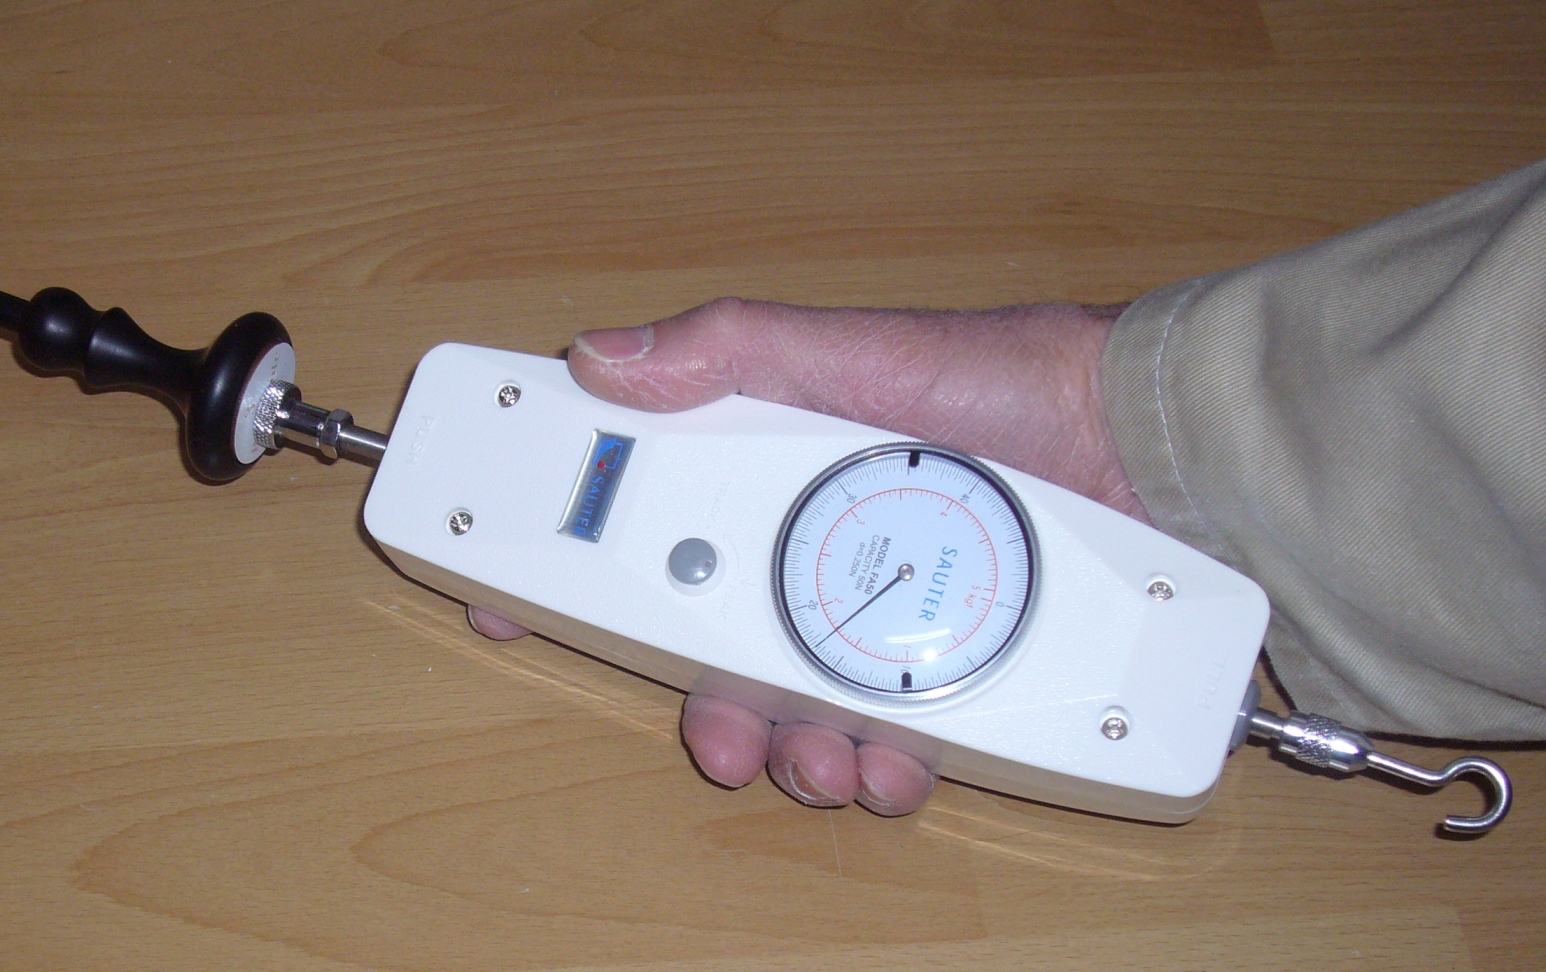 Wasserdruckmesser stockfoto. Bild von technologie, stahl - 75965702